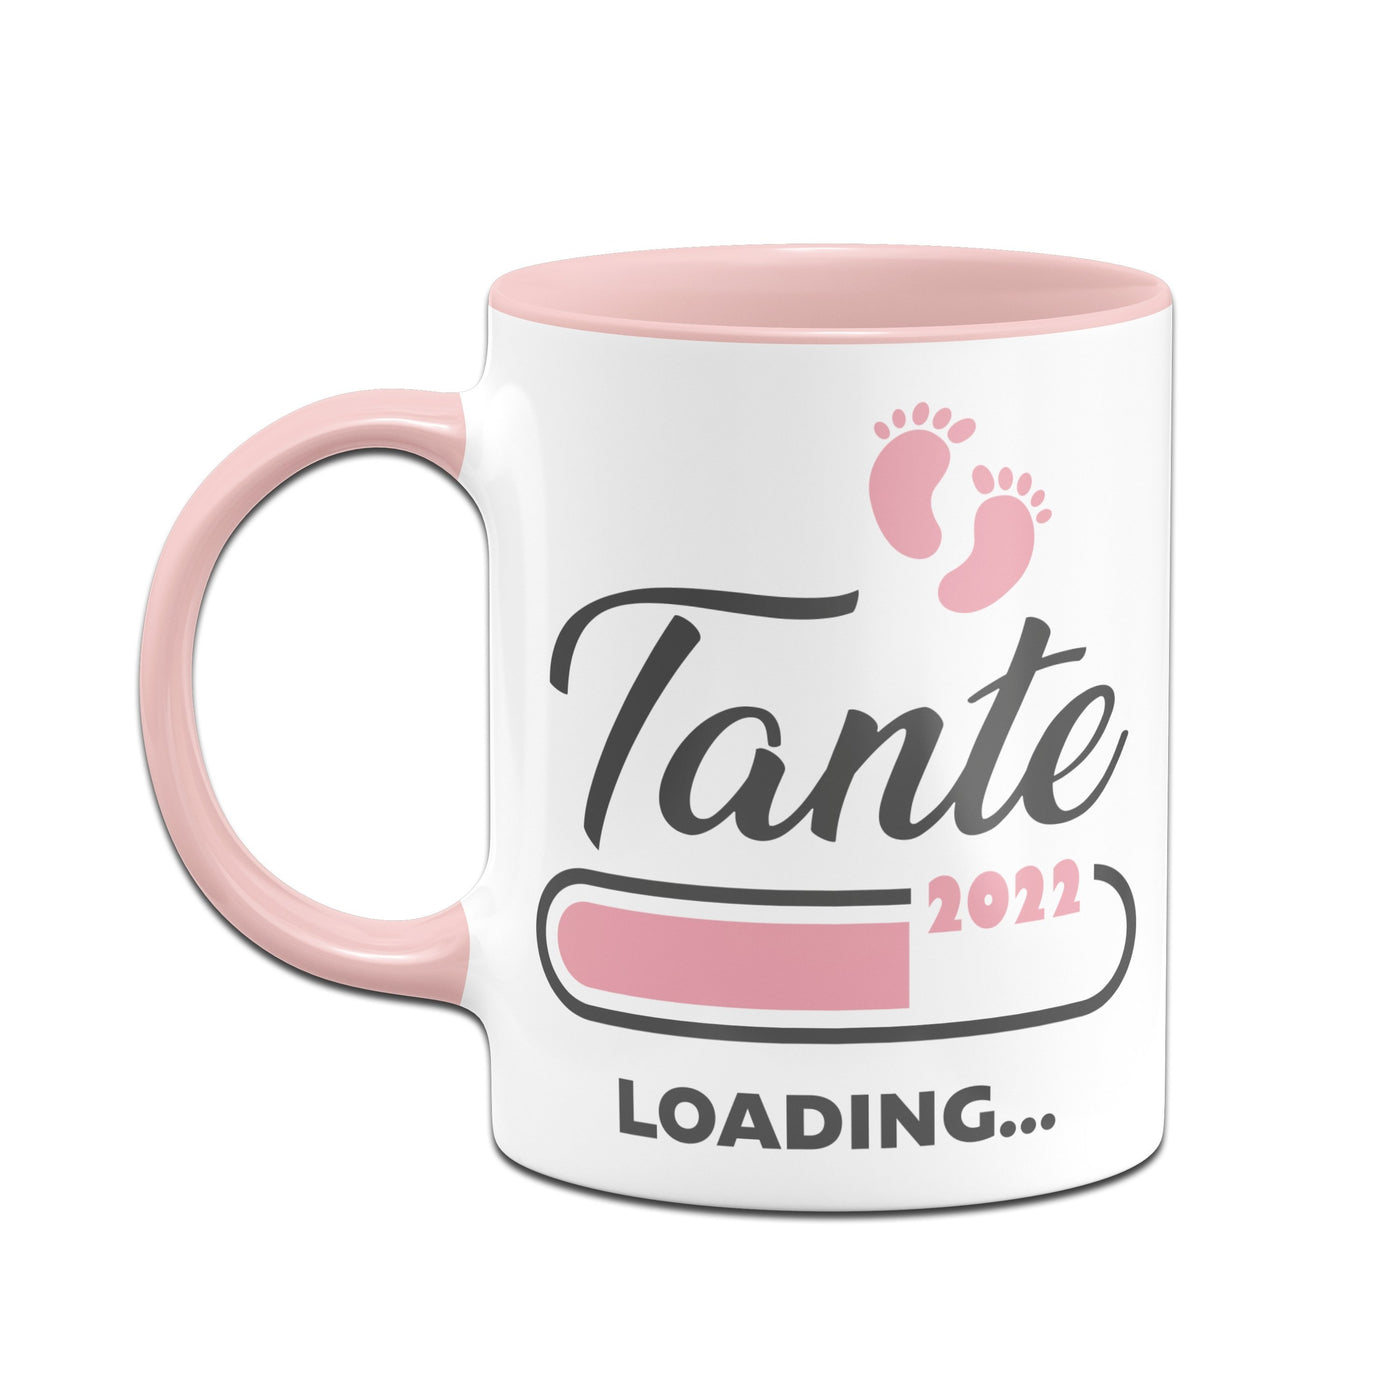 Bild: Tasse - Tante loading 2022 Geschenkidee